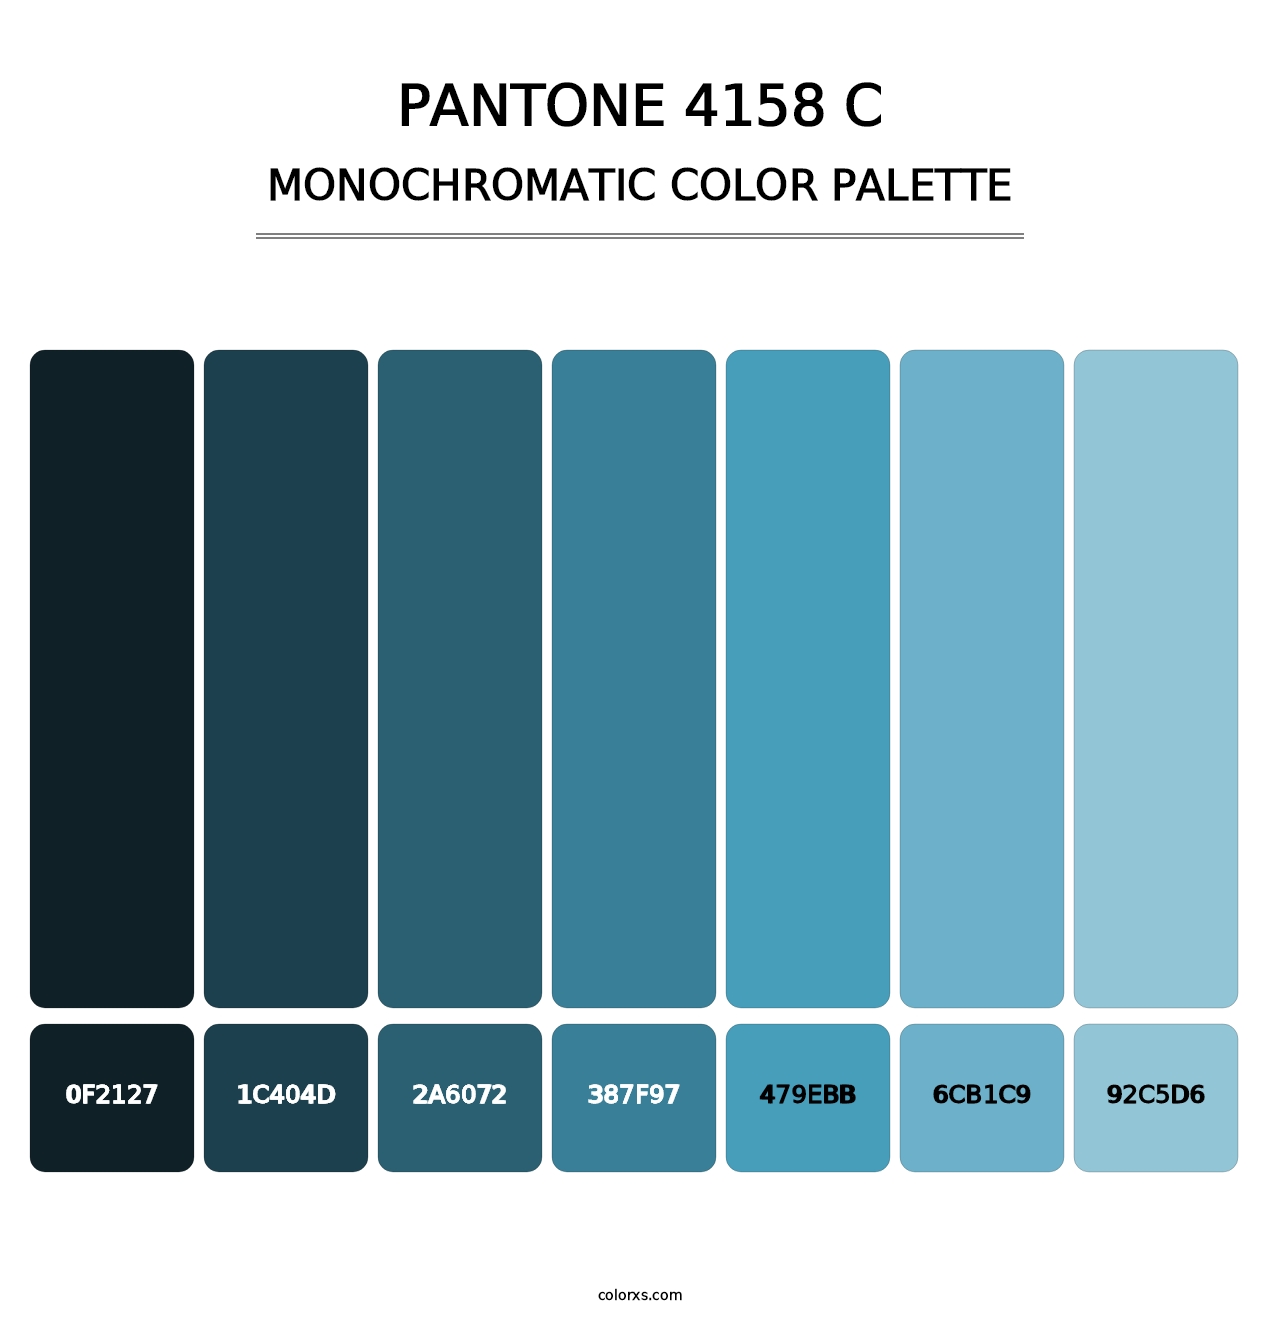 PANTONE 4158 C - Monochromatic Color Palette